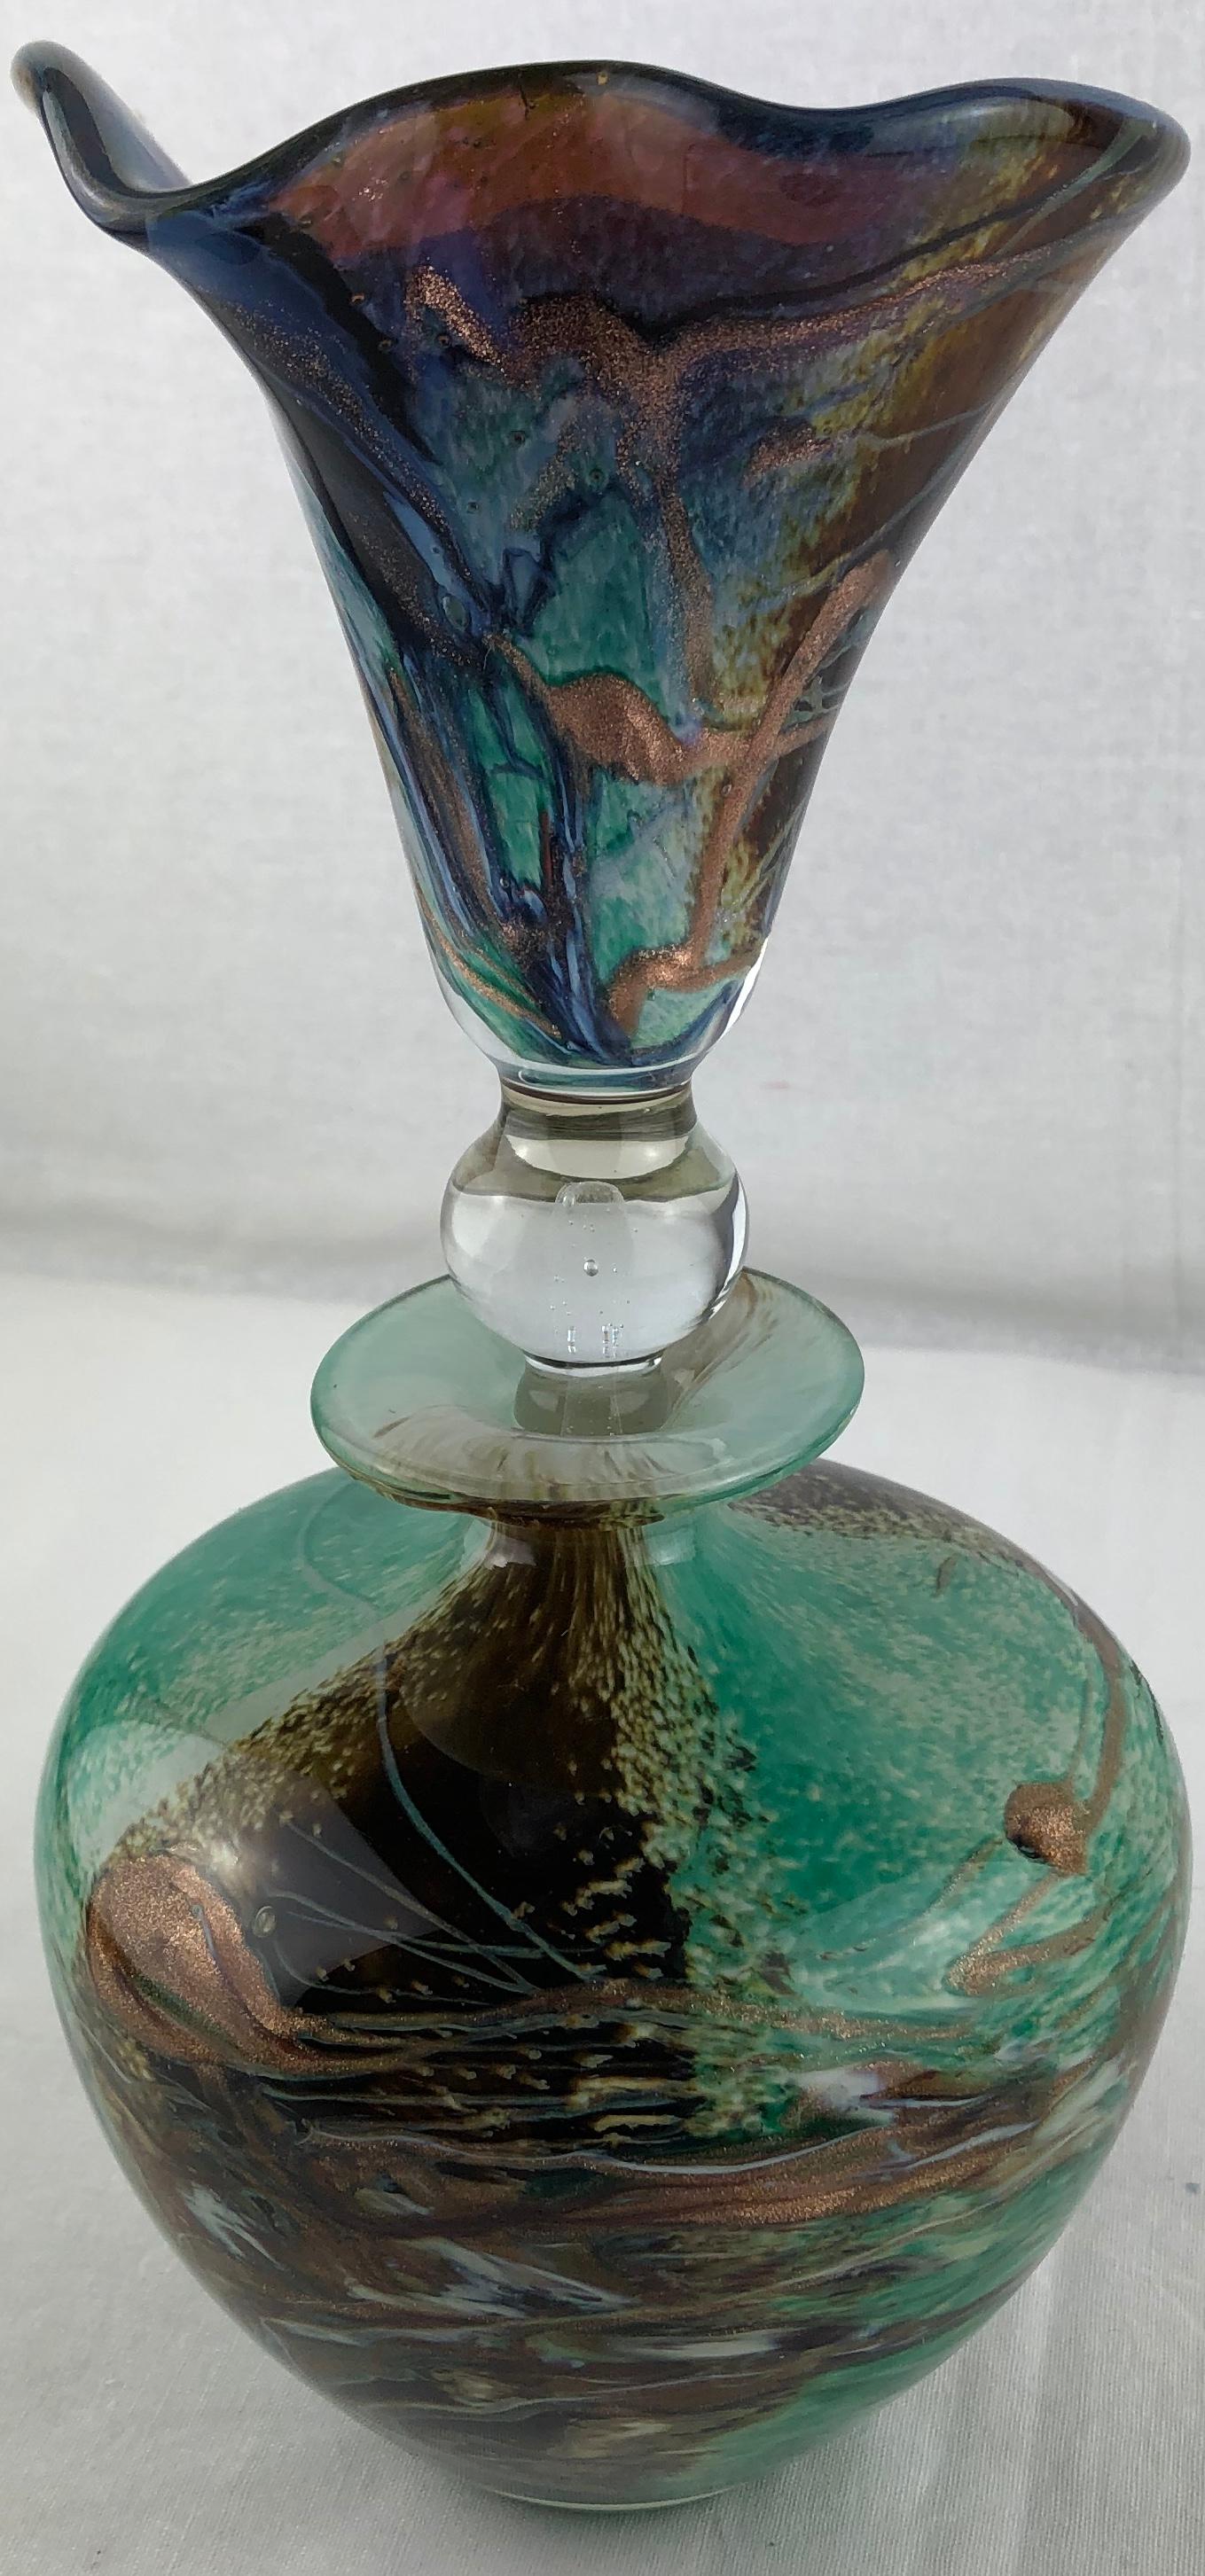 Ein seltener und einzigartiger handgefertigter Kunstglas-Parfümflakon von Michele Luzoro, der als 